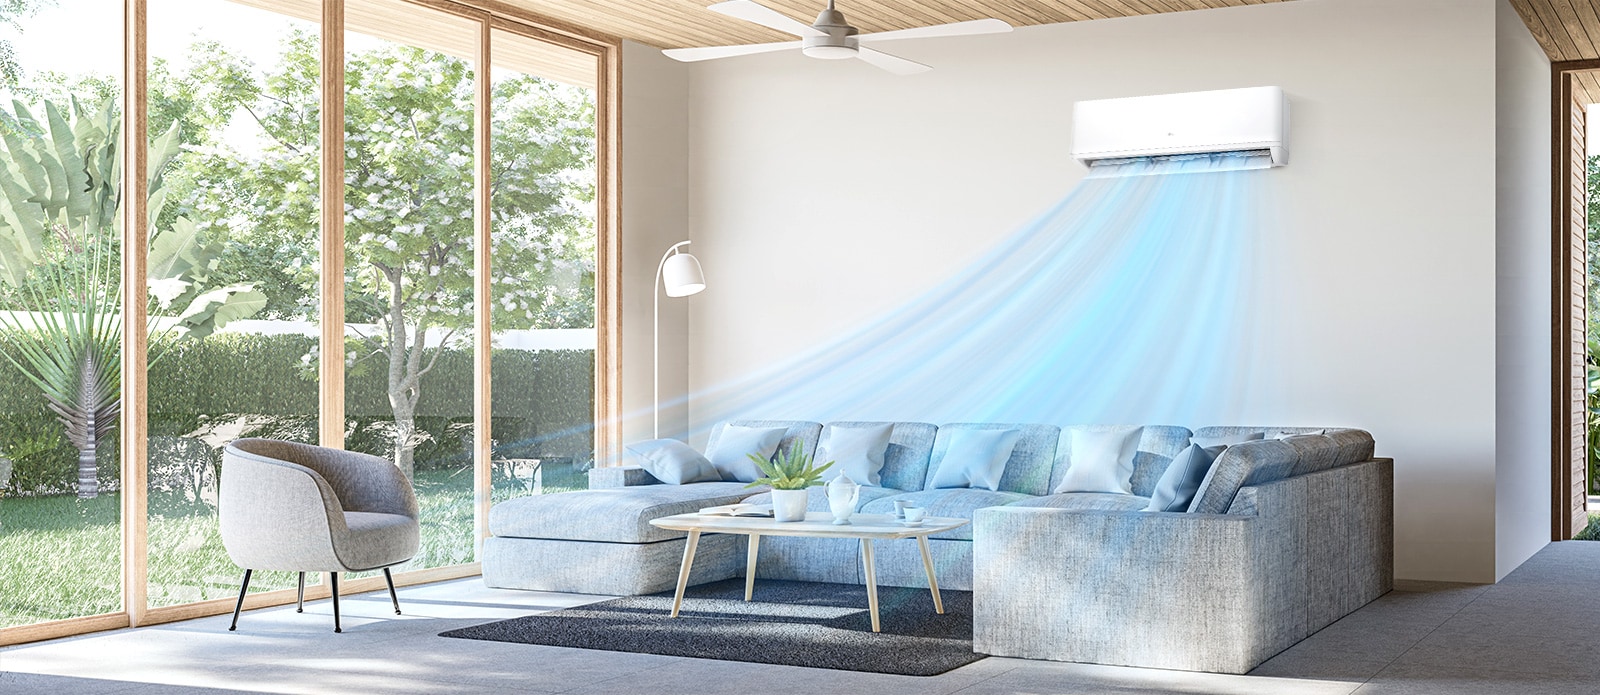 يعمل مكيف الهواء المثبت على الجدار في غرفة المعيشة بها نافذة كبيرة ناحية اليمين، وينساب الهواء البارد من مكيف الهواء لينشر إحساسًا بالانتعاش.